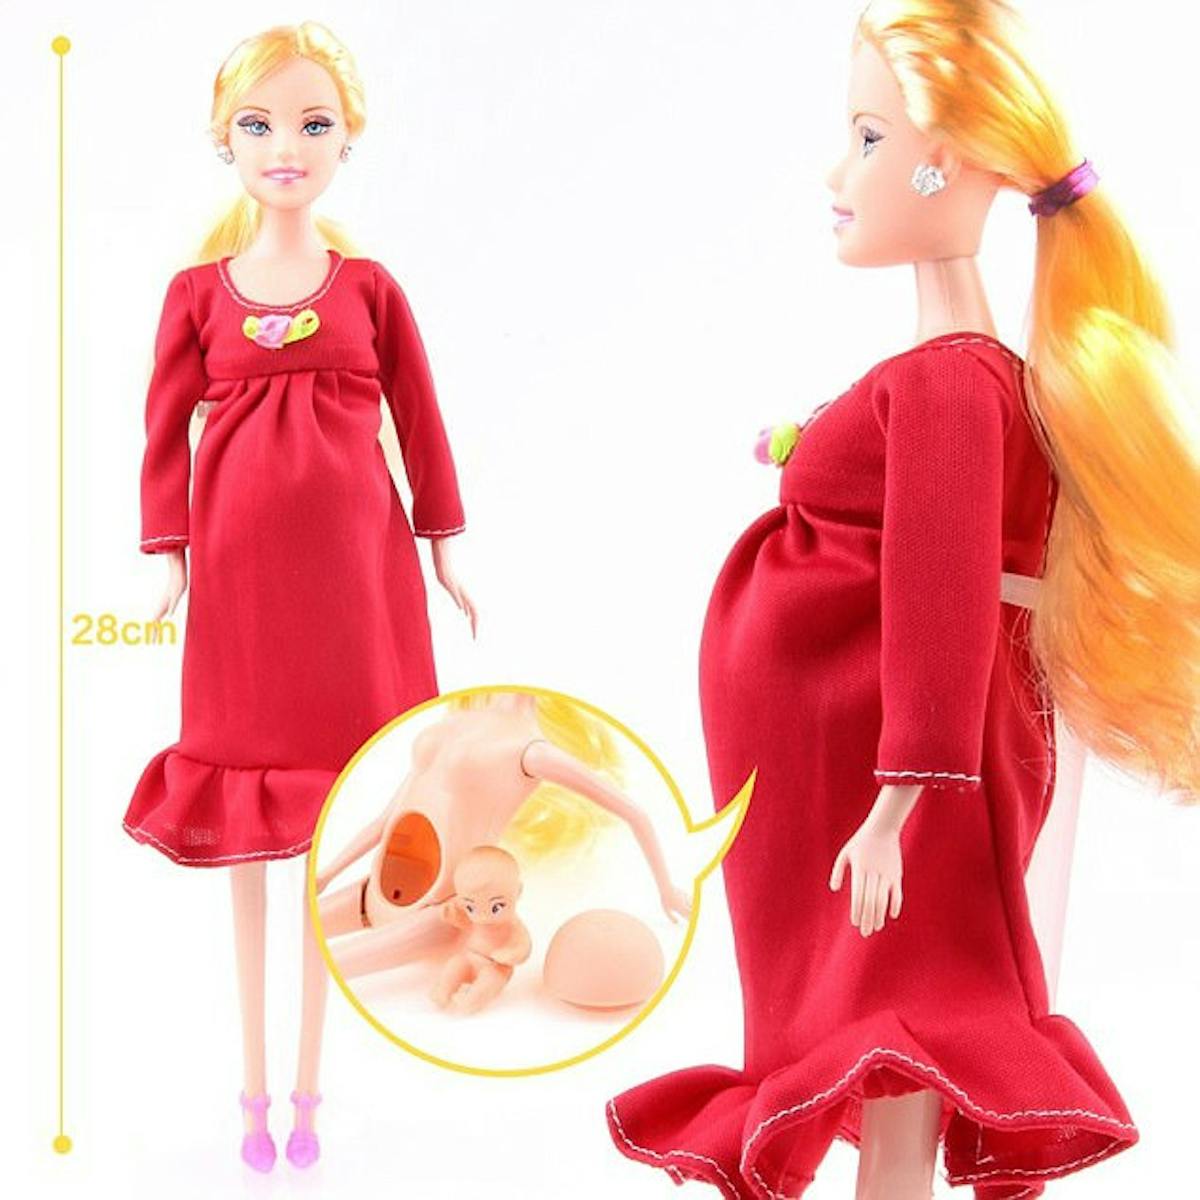 Kunhe Véritable poupée enceinte avec un bébé dans son ventre, rouge